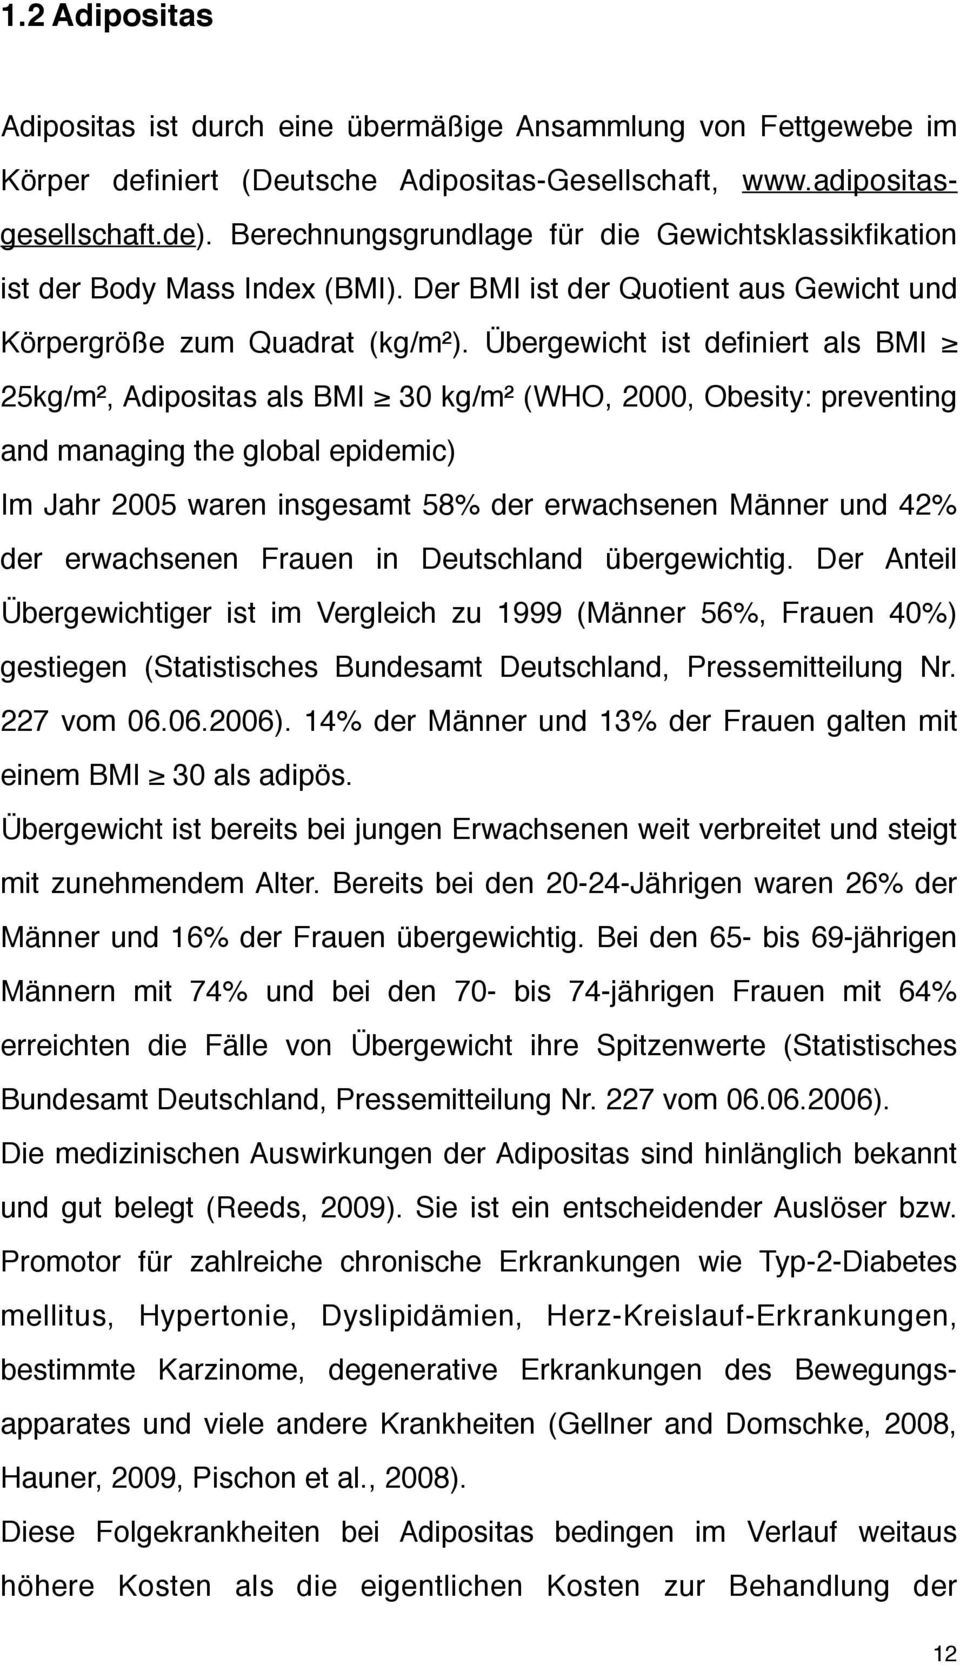 Übergewicht ist definiert als BMI 25kg/m², Adipositas als BMI 30 kg/m² (WHO, 2000, Obesity: preventing and managing the global epidemic) Im Jahr 2005 waren insgesamt 58% der erwachsenen Männer und